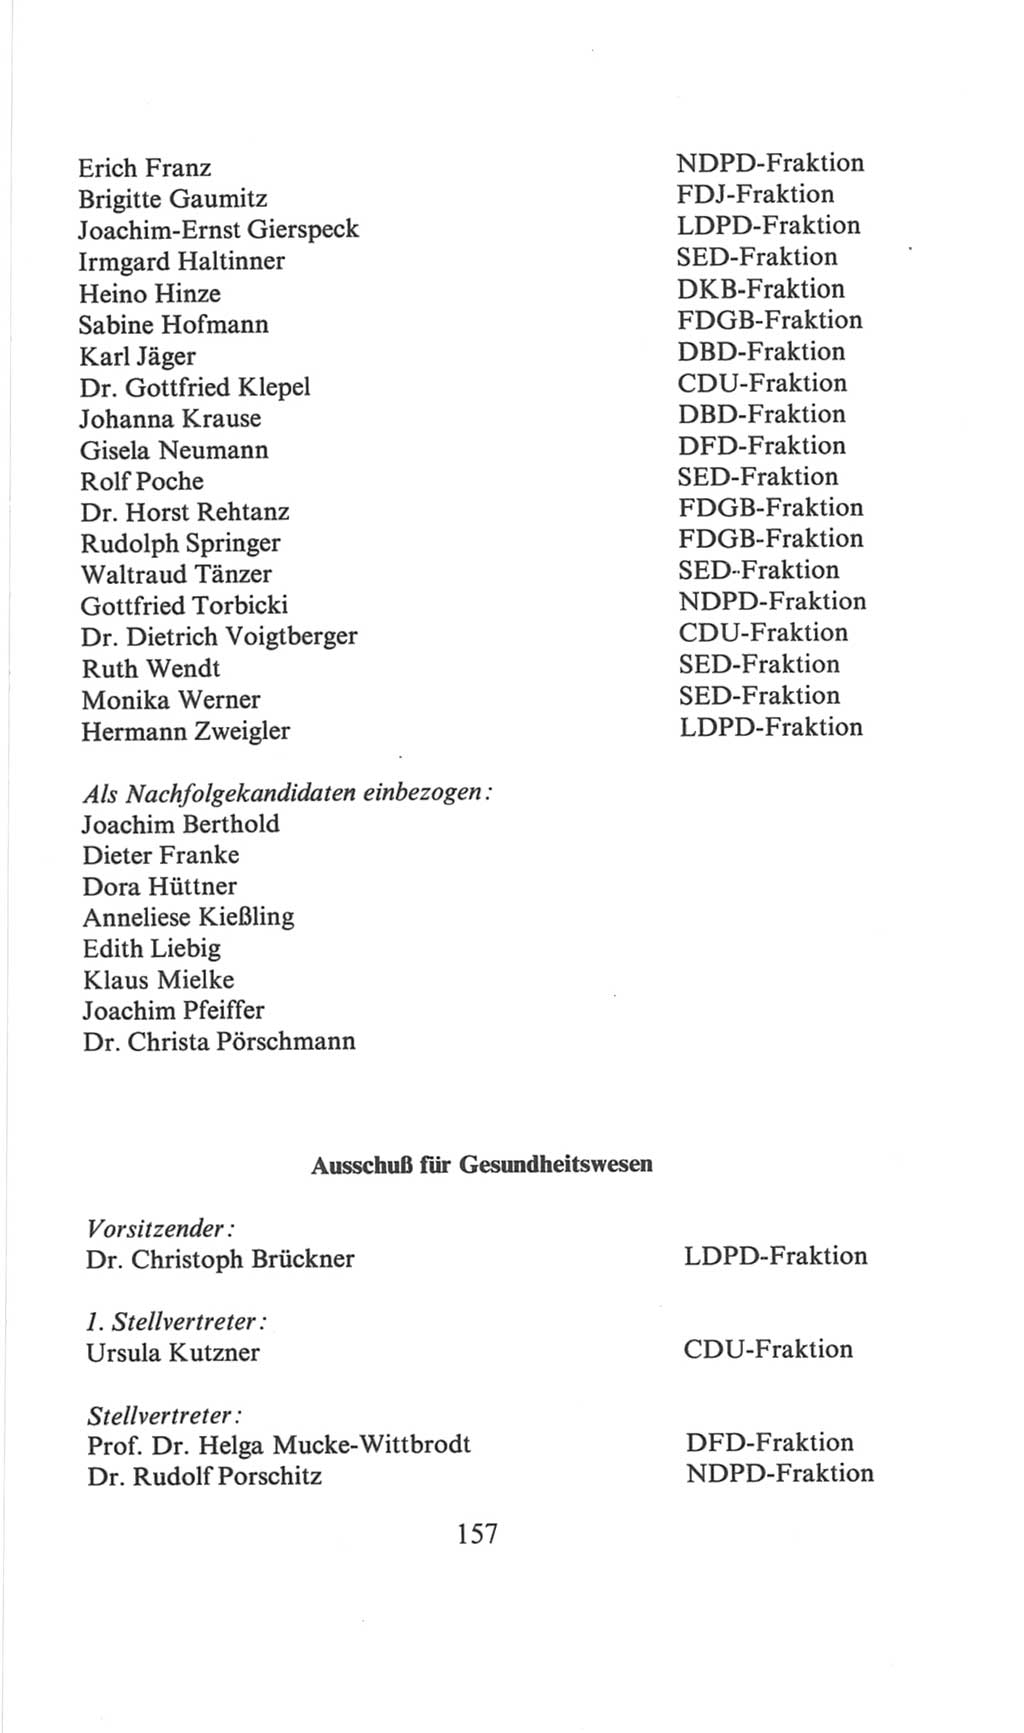 Volkskammer (VK) der Deutschen Demokratischen Republik (DDR), 6. Wahlperiode 1971-1976, Seite 157 (VK. DDR 6. WP. 1971-1976, S. 157)